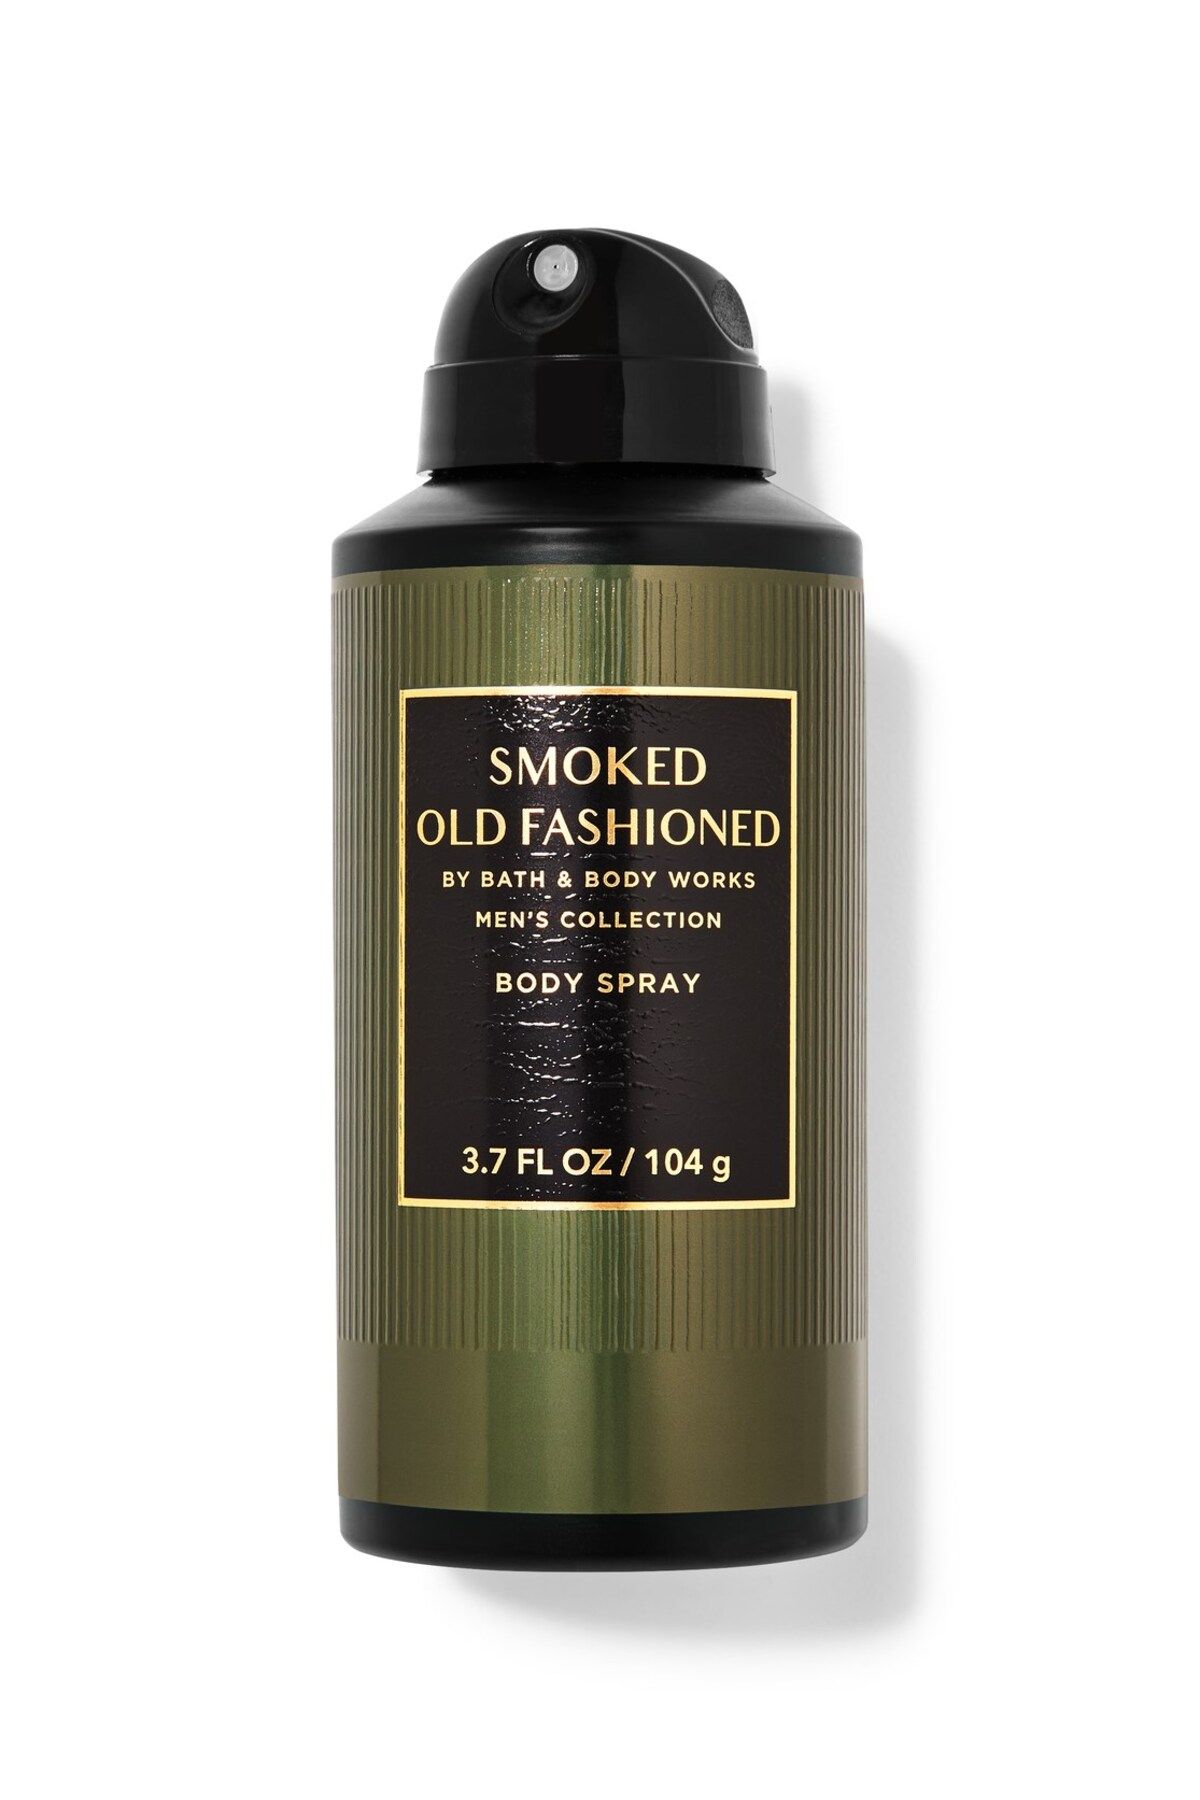 Bath & Body Works Smoked Old Fashıoned Deodorant